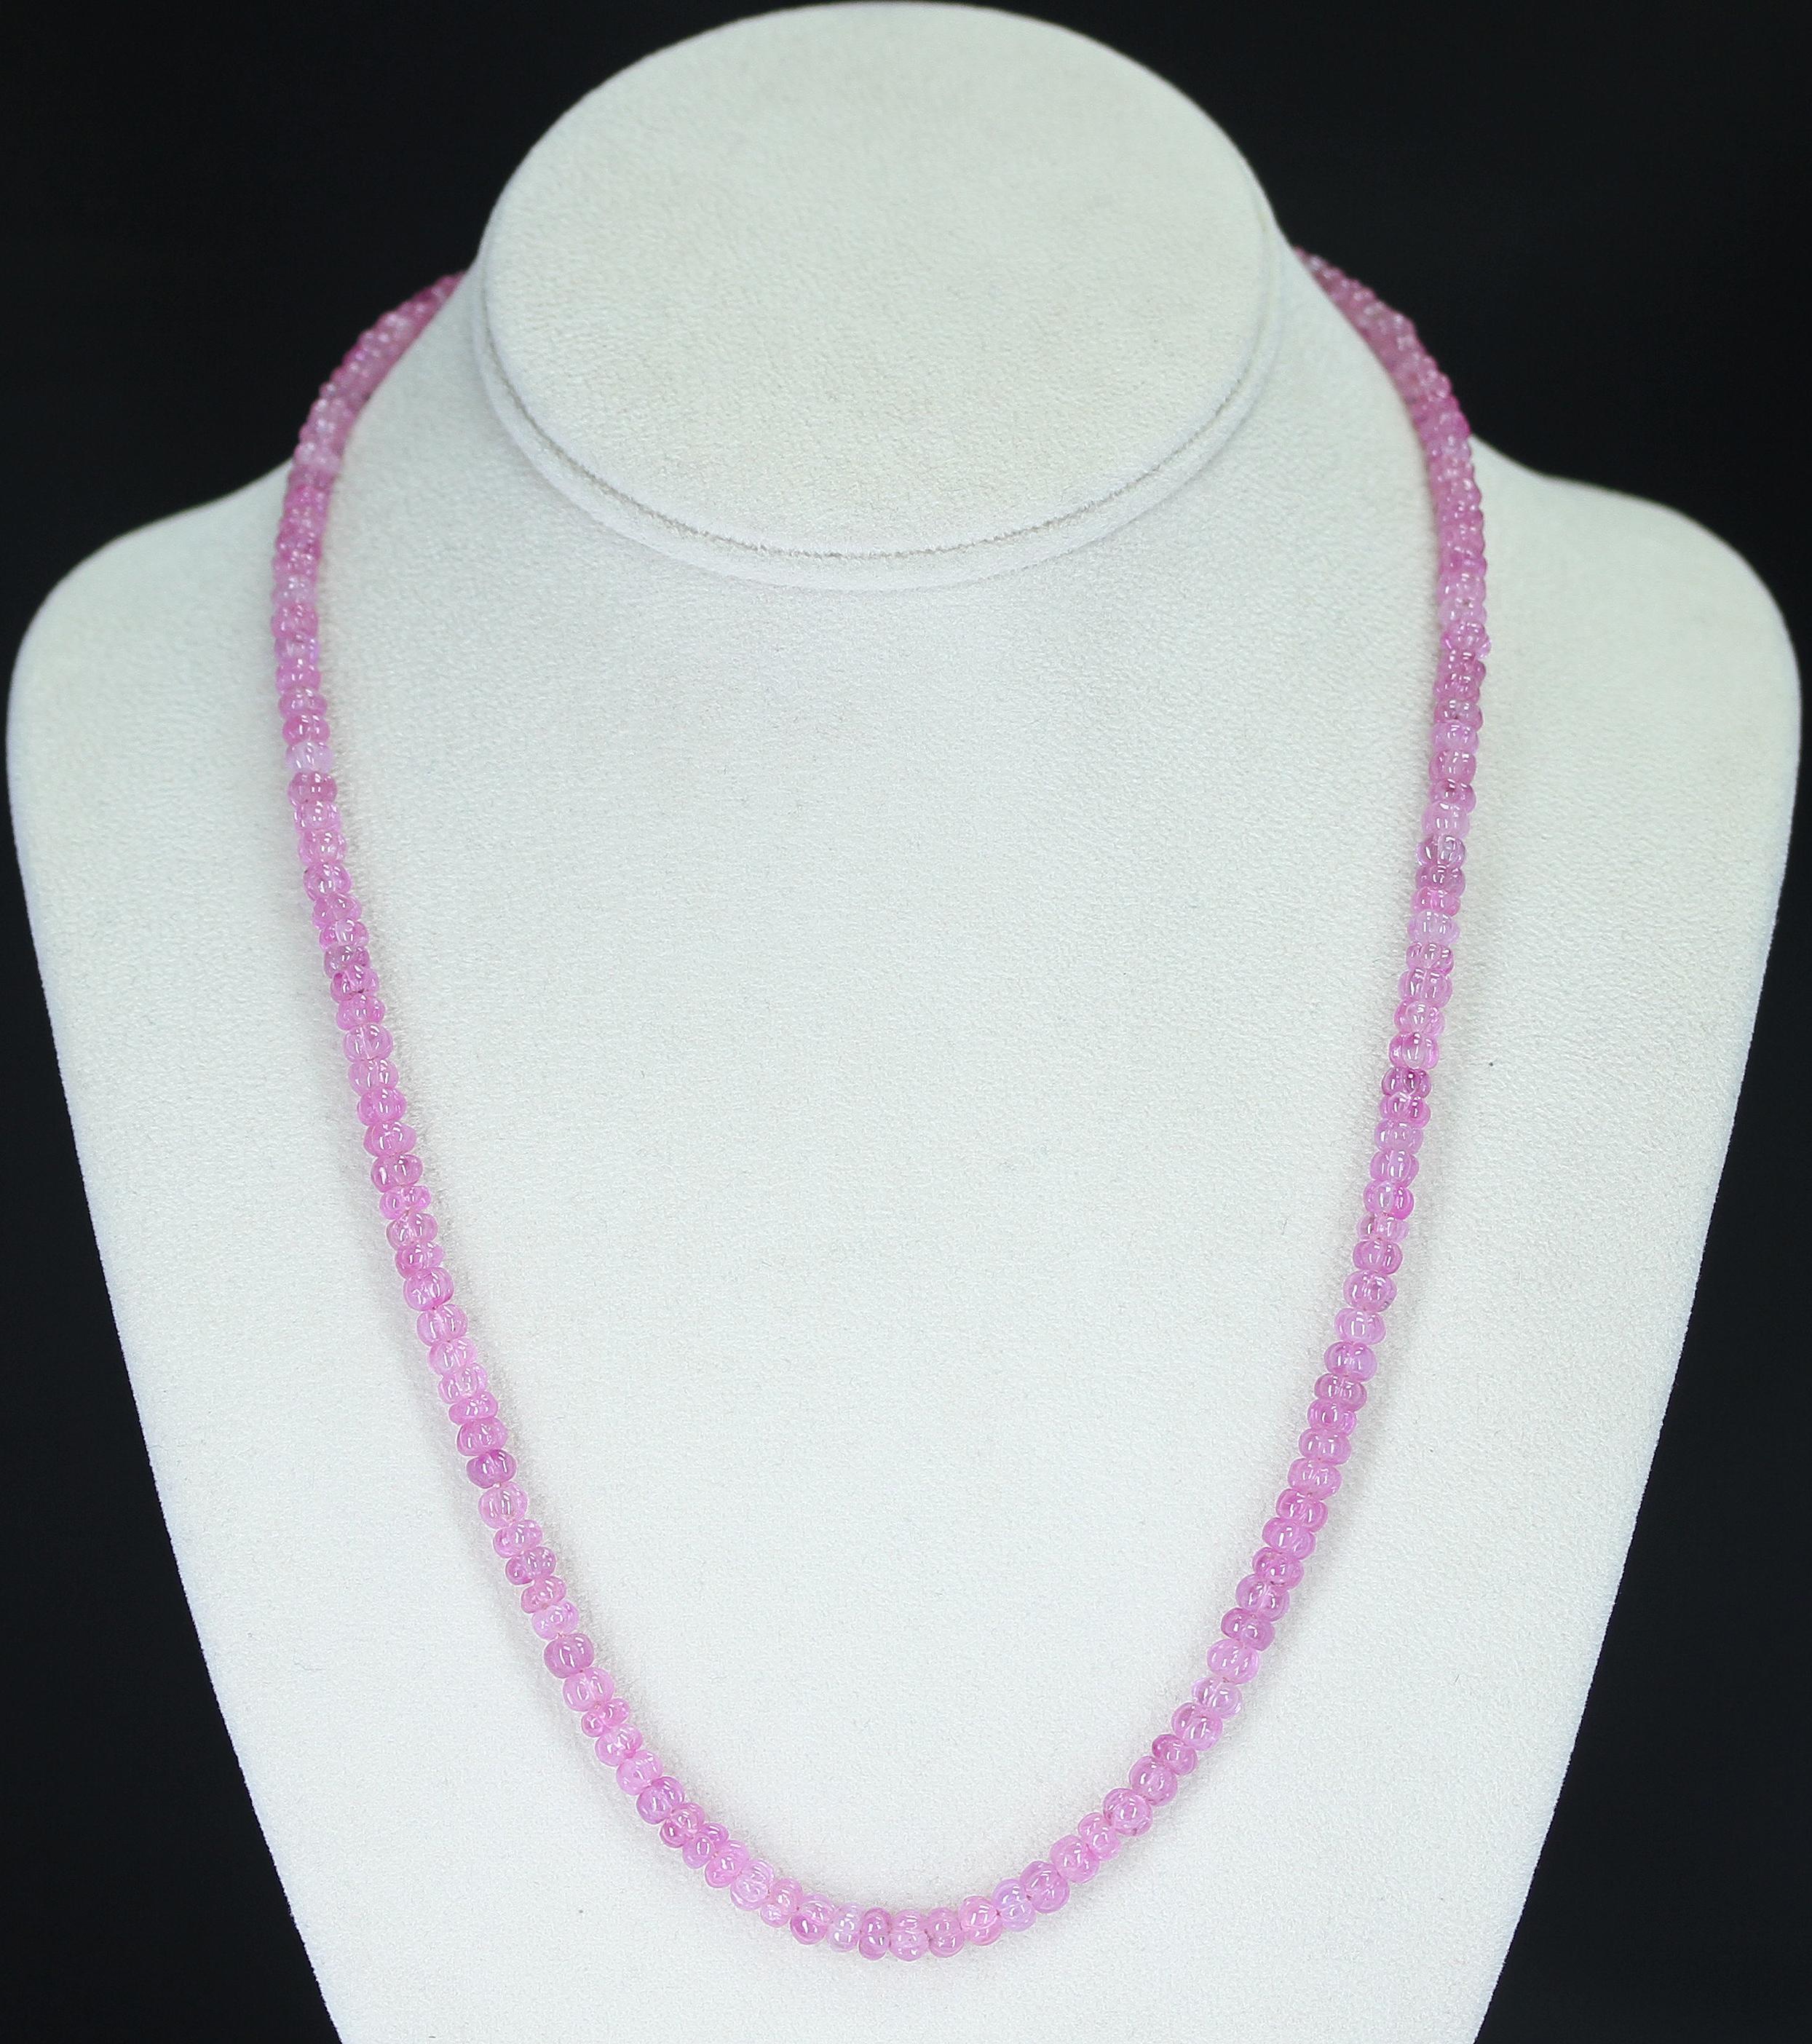 Ein echter & natürlicher rosa Saphir geschnitzte Perlen Halskette mit einem 14K Verschluss. Die Kette wiegt 145 Karat, die Länge beträgt 21 Zoll, und die Perlen reichen von 5 mm bis 5,50 mm. 

Wir können die Kette auch nach Ihren Wünschen anpassen,